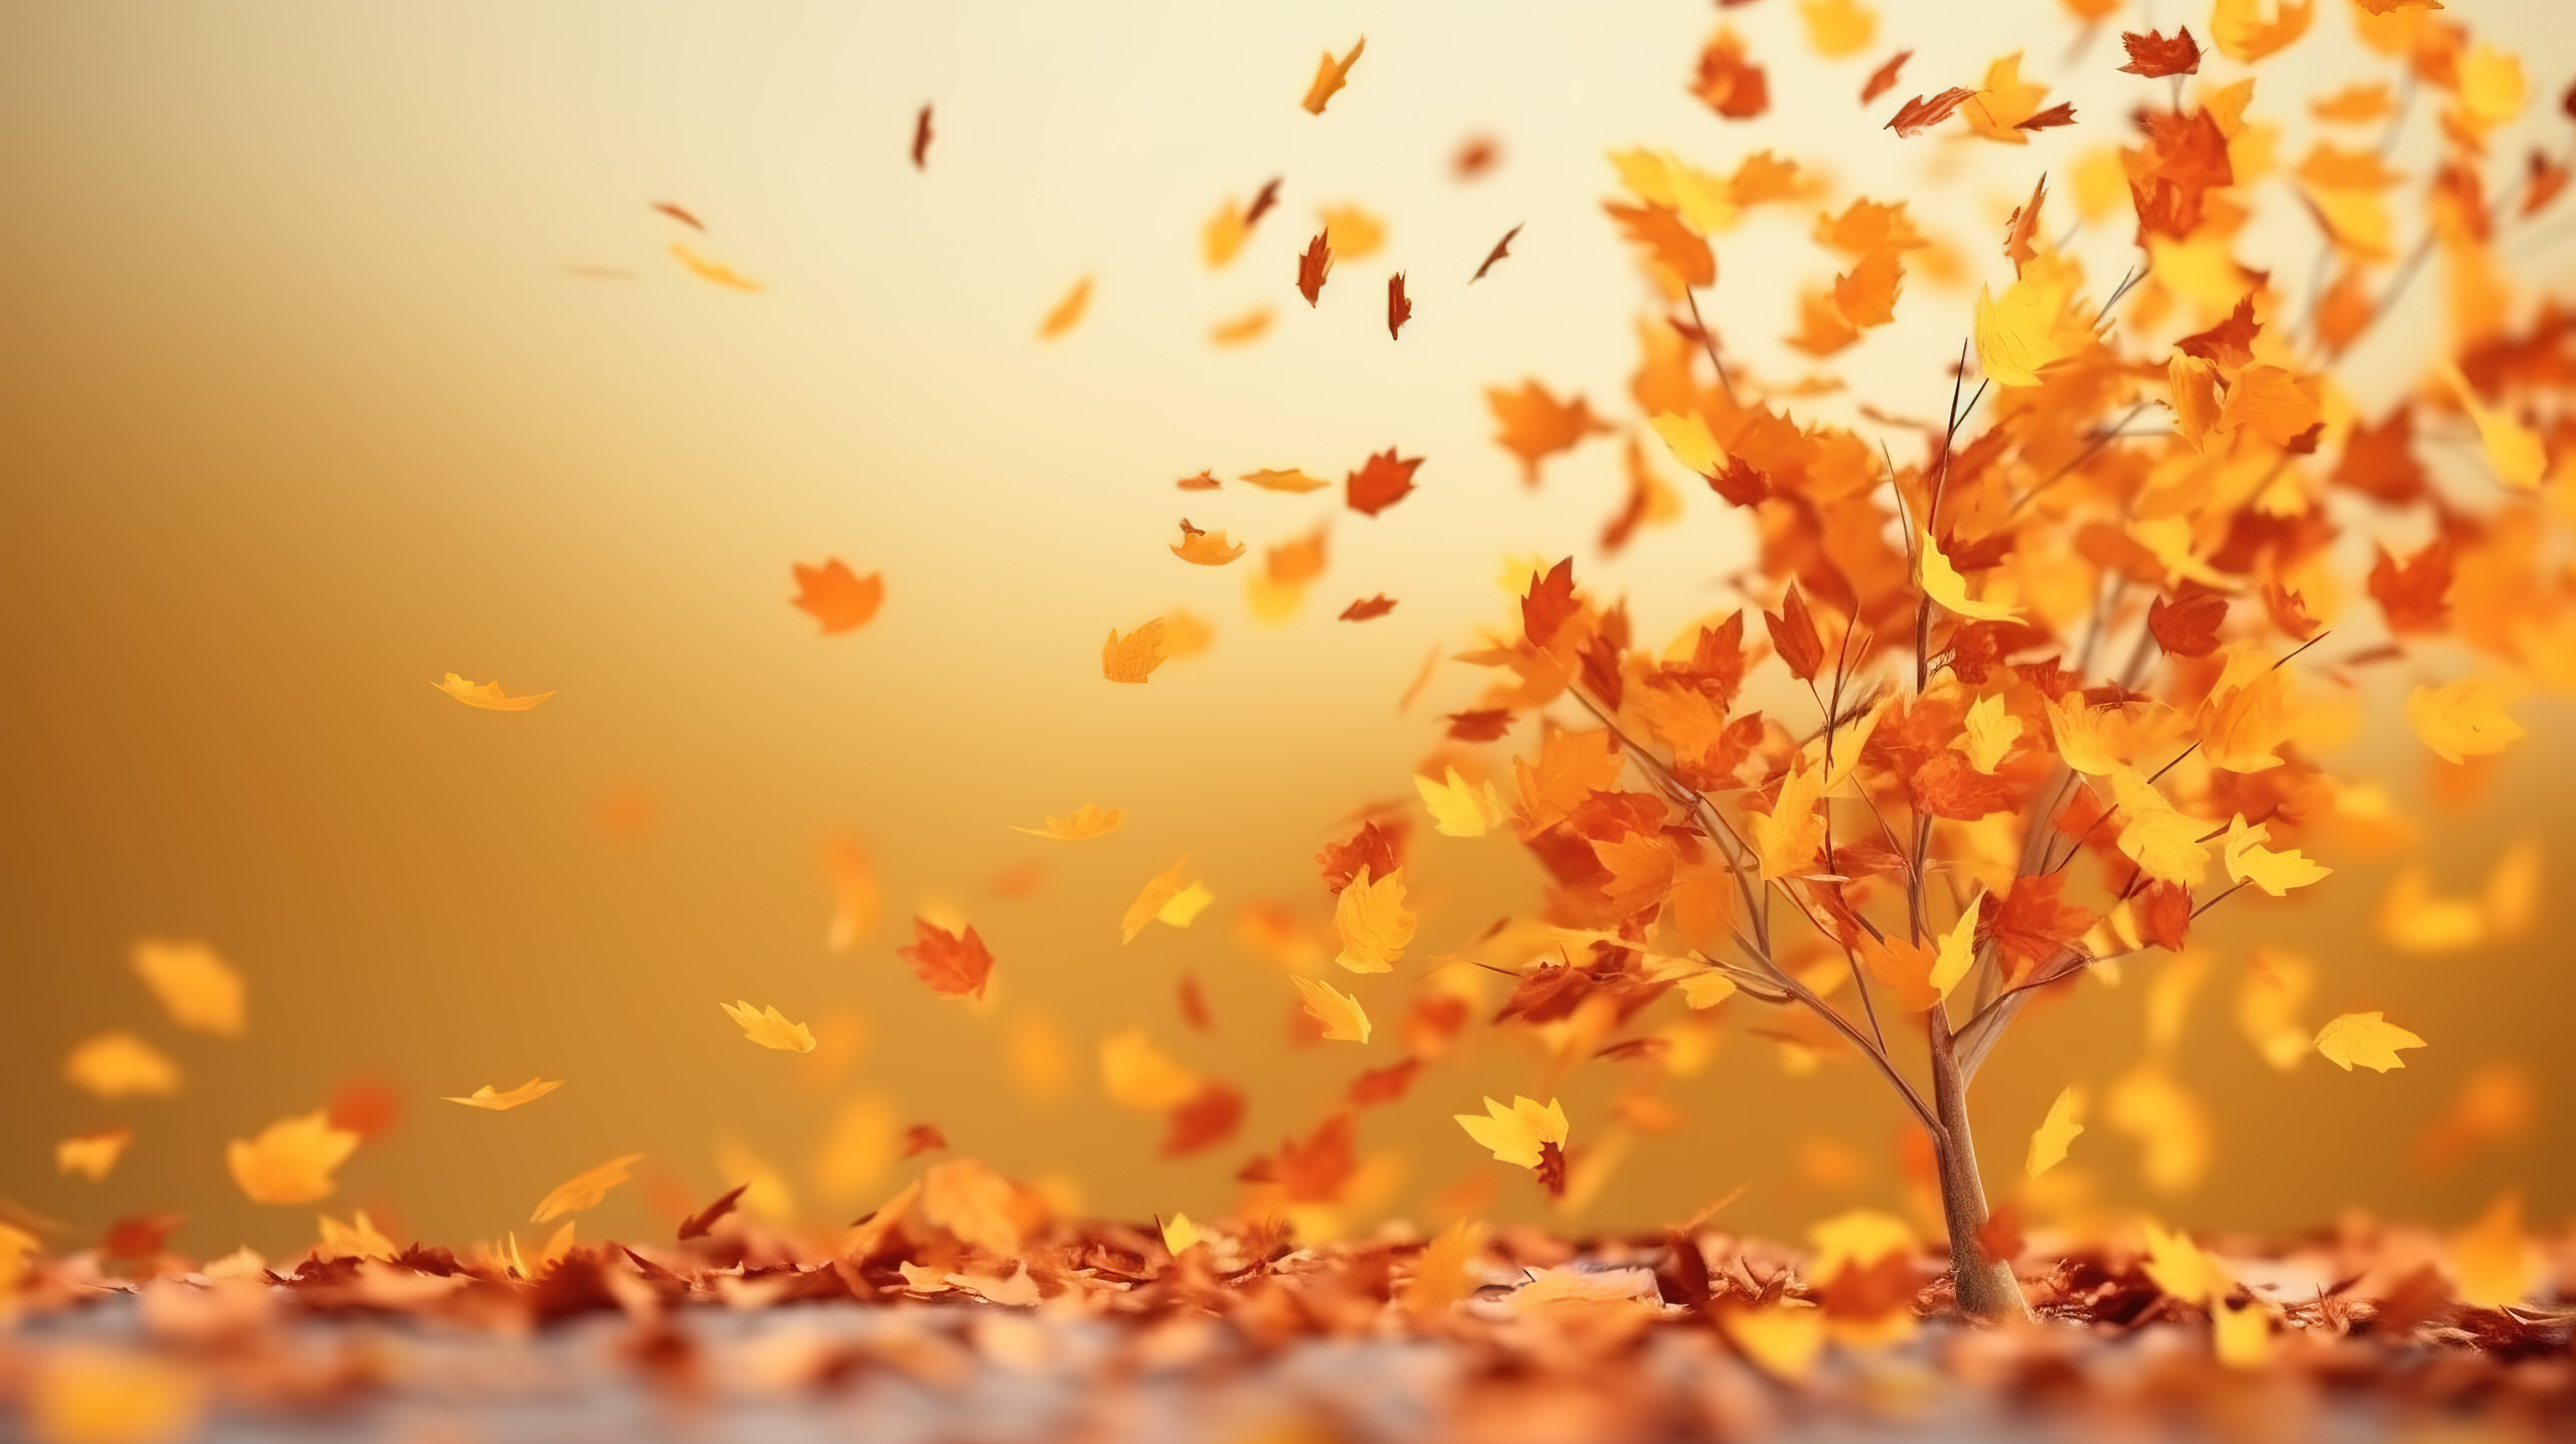 秋叶旋转和下降的空白区域文本 3d 图形图片